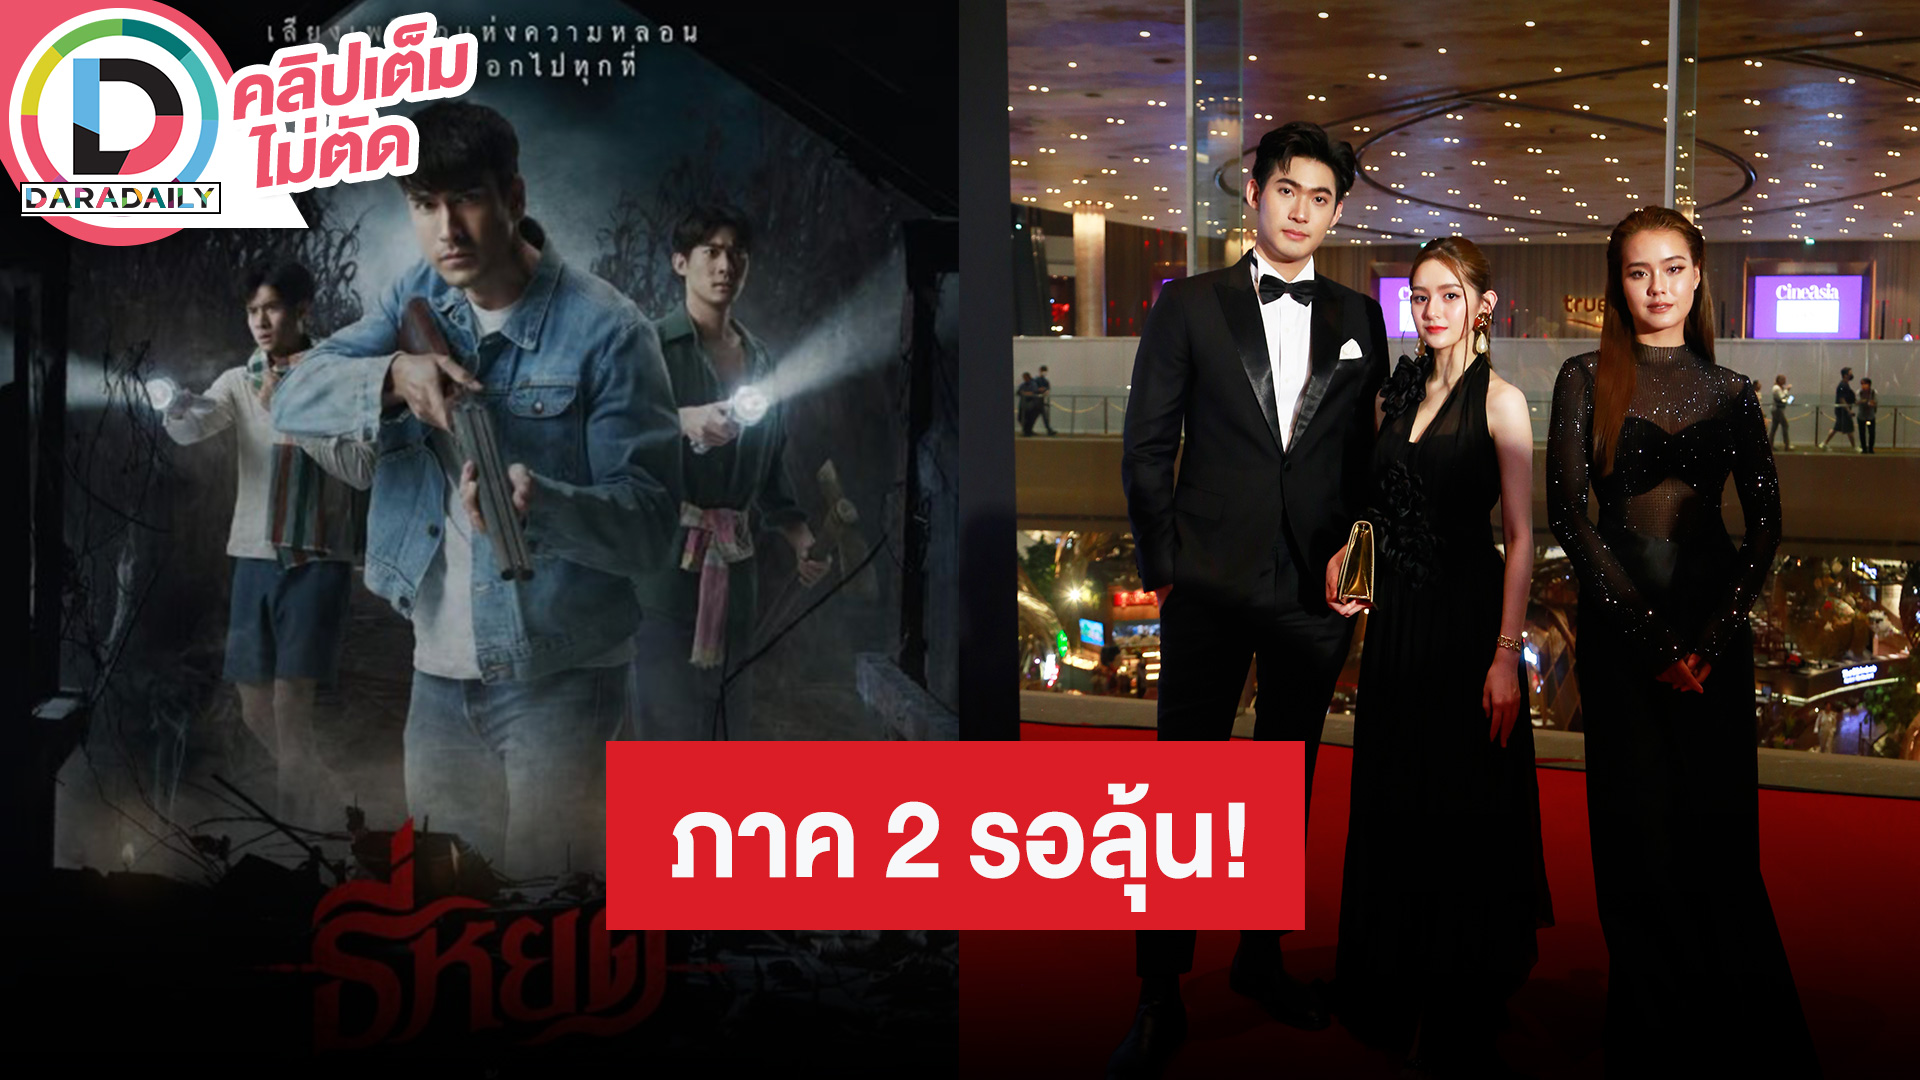 นักแสดงนำ “ธี่หยด” ดีใจคนในเอเชียได้เห็นว่าหนังไทยไม่แพ้ชาติใดในโลก จะมีภาค 2 ไหมต้องรอติดตาม